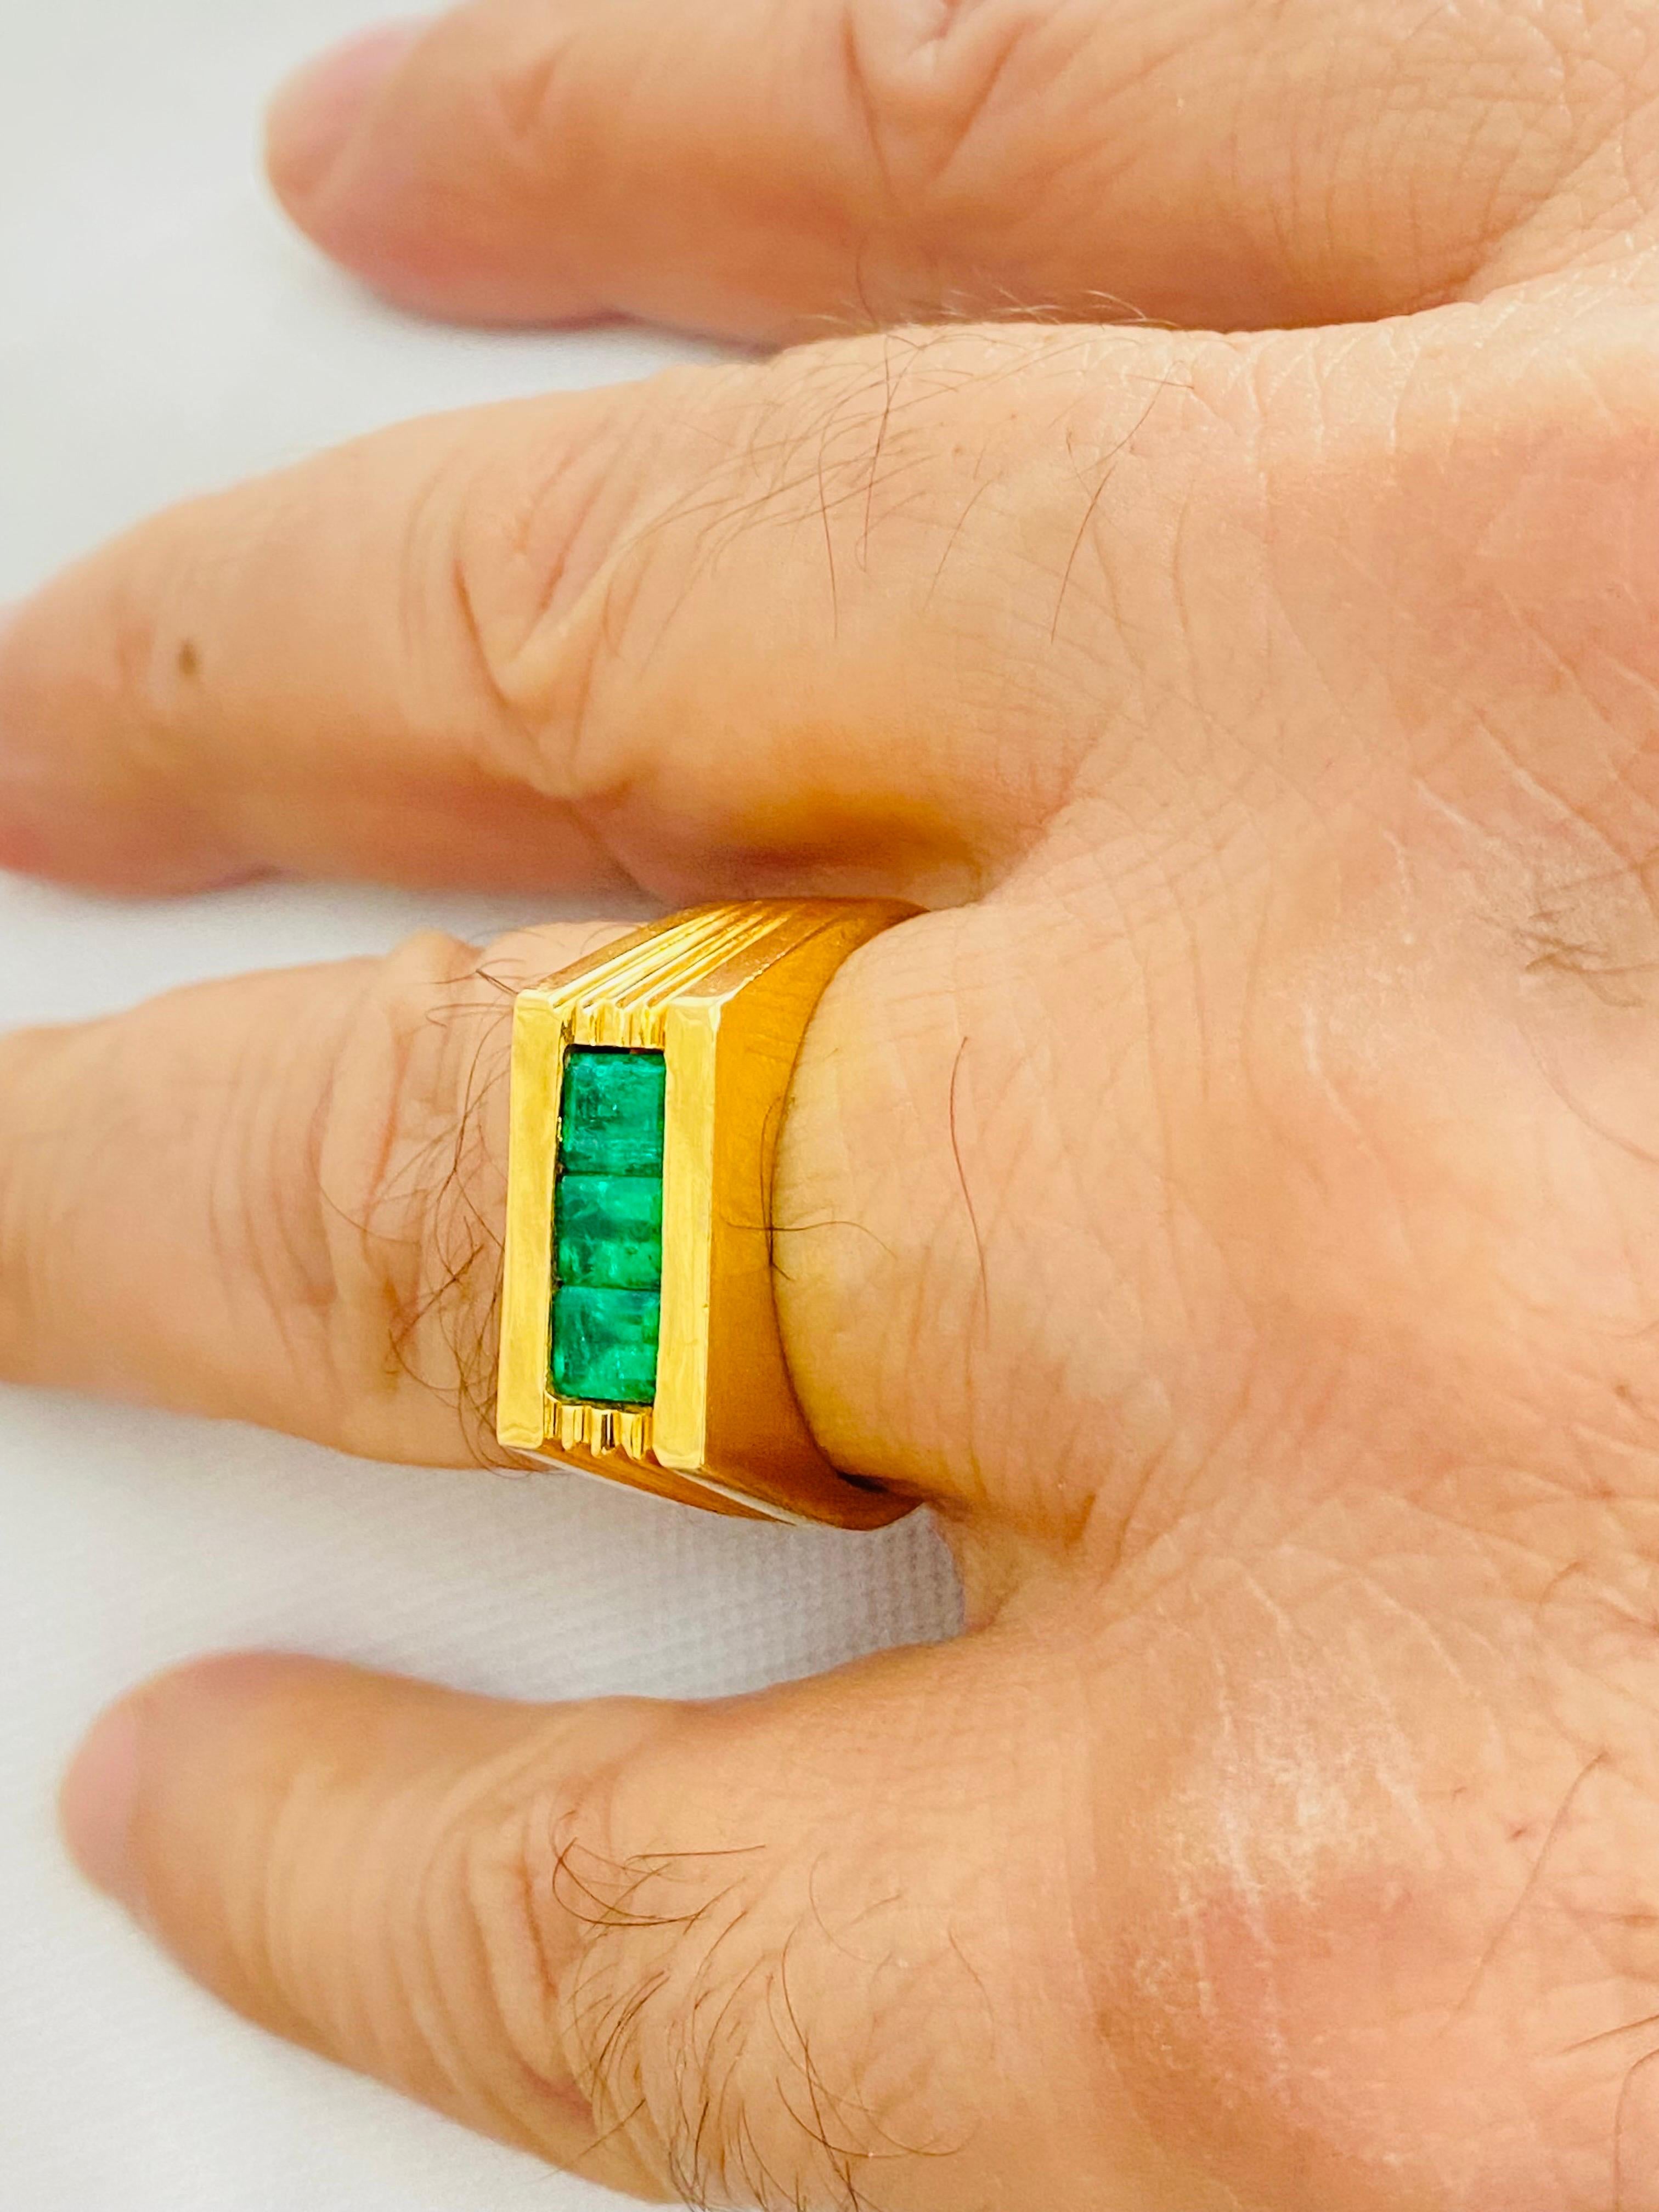 Vintage Homme 1.50 Carat Colombian Emeralds Ring 18k Gold. La bague comporte 3 pierres d'émeraude pesant chacune environ 0,50 carat pour un poids total de 1,50 carat. Les émeraudes sont fascinantes et ont un aspect très riche et luxueux. La bague